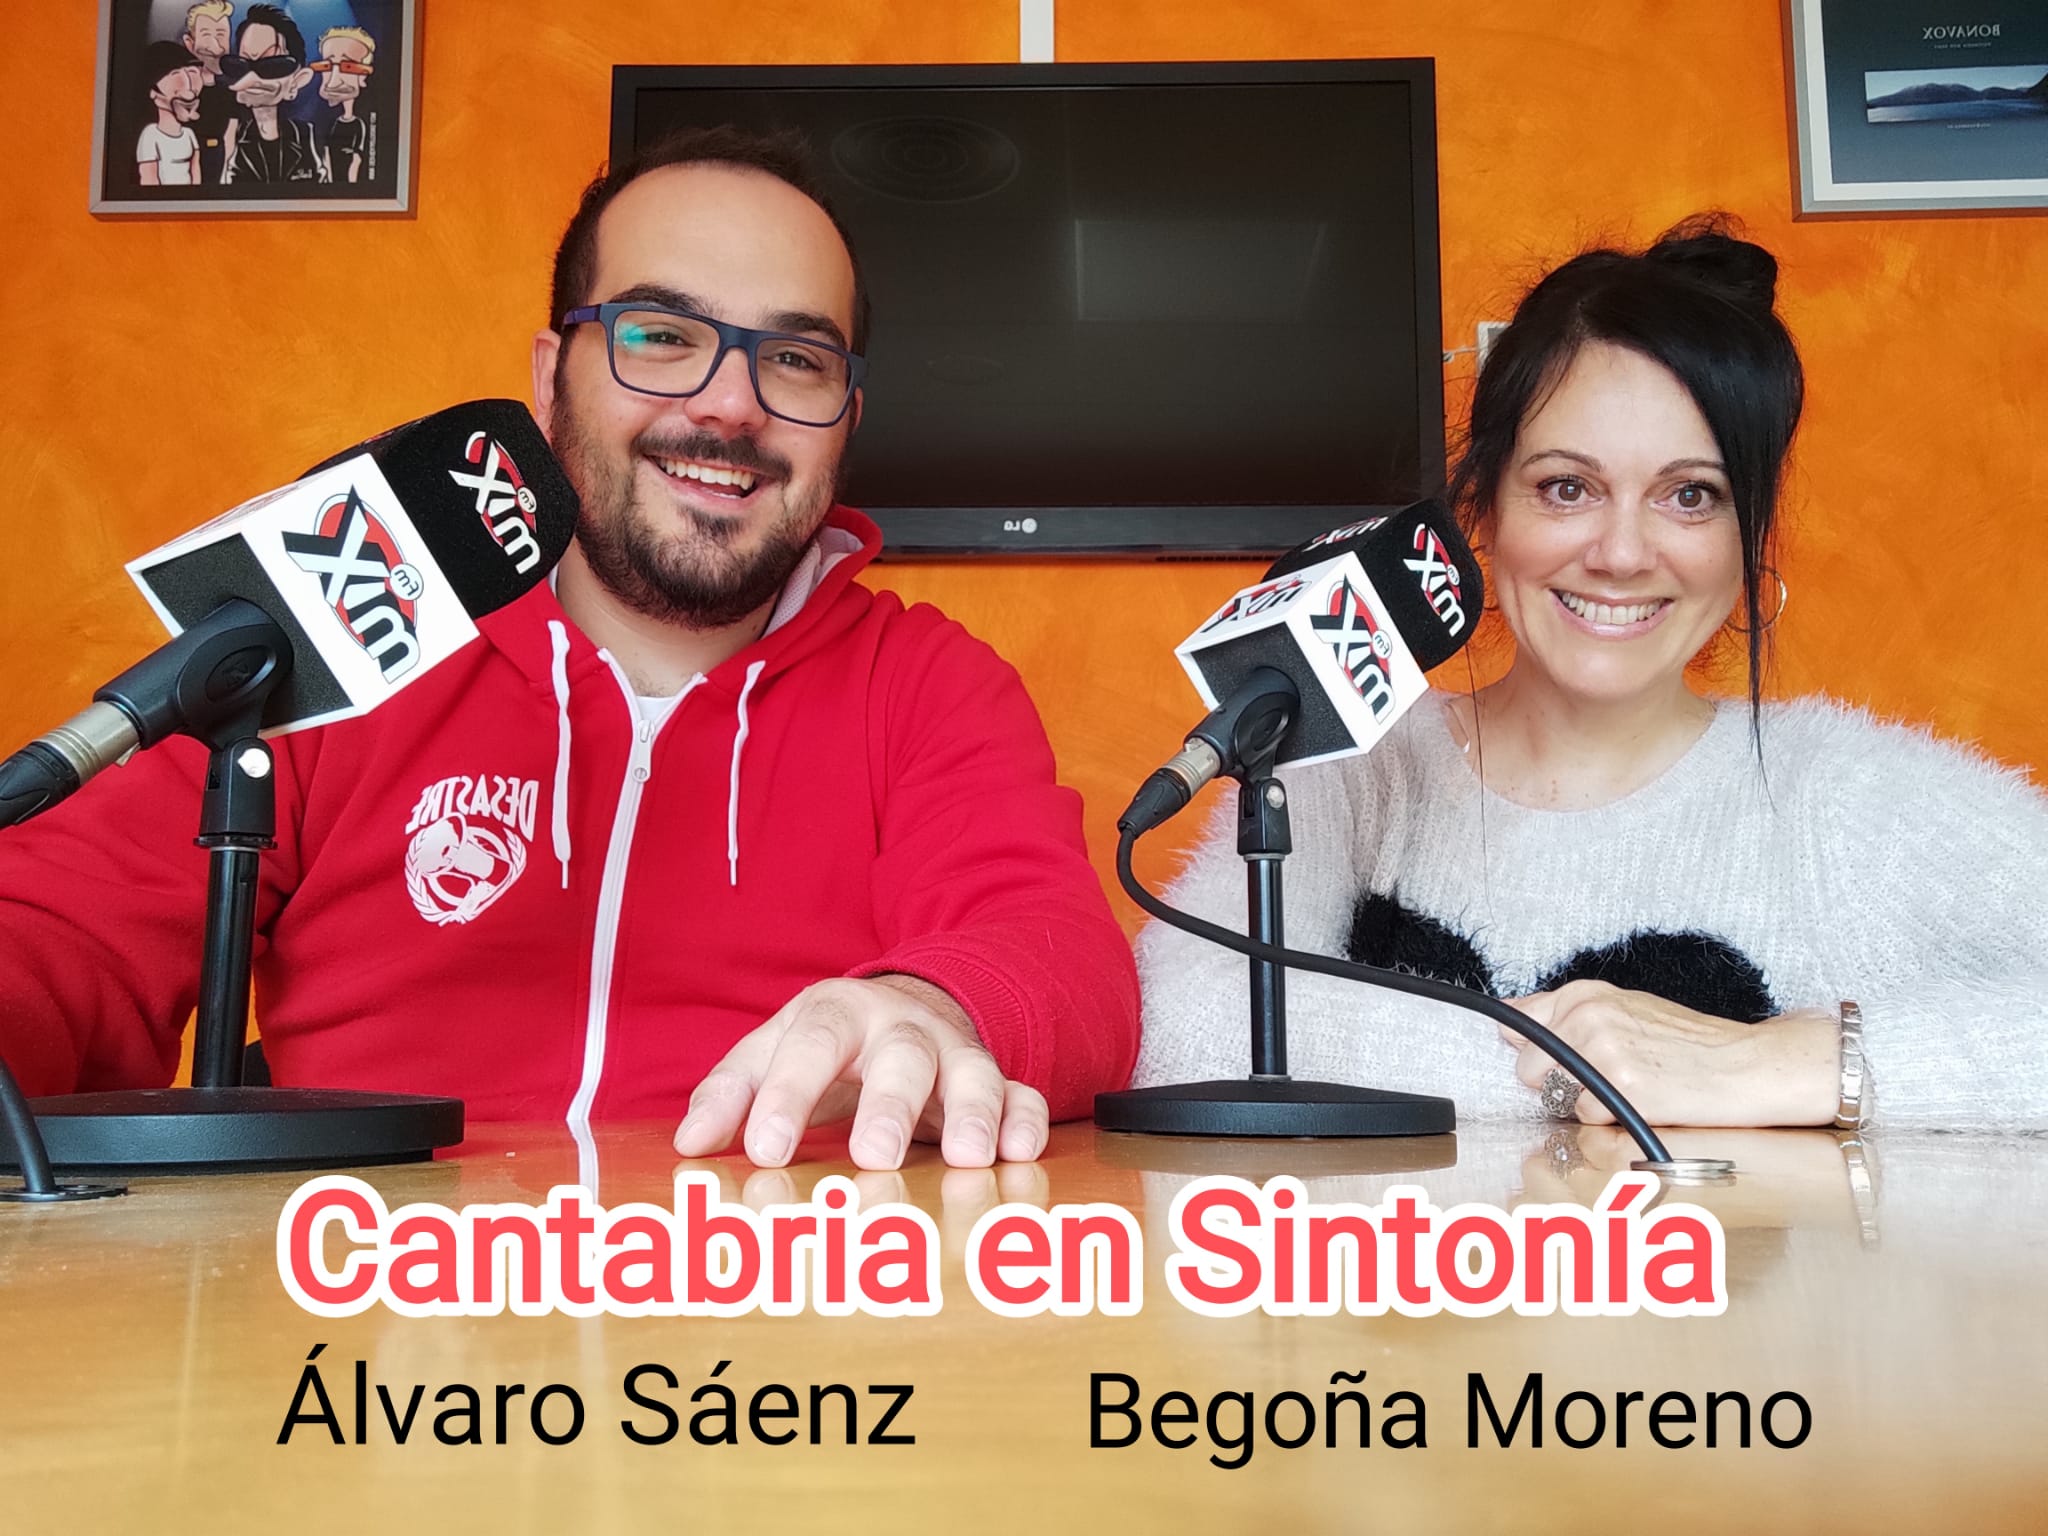 Cantabria en Sintonía en Mix FM. Viernes 13-05-2022